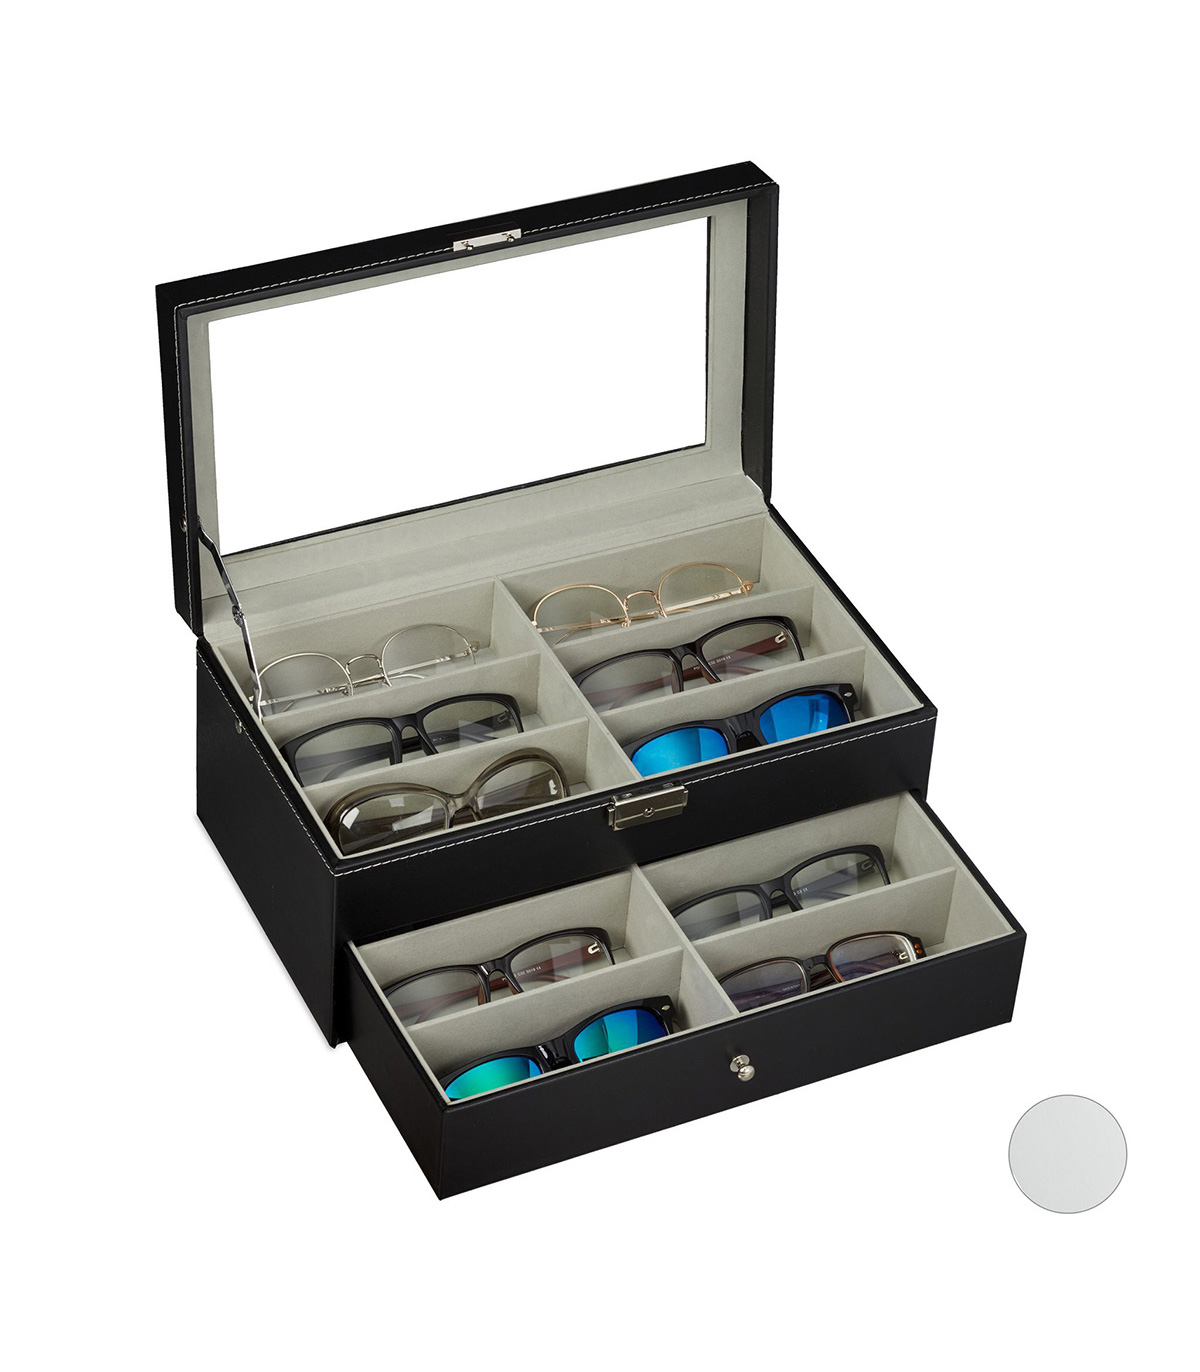 Cutie pentru ochelari, 12 compartimente captusite cu catifea, capac sticla transparent, piele ecologica, negr